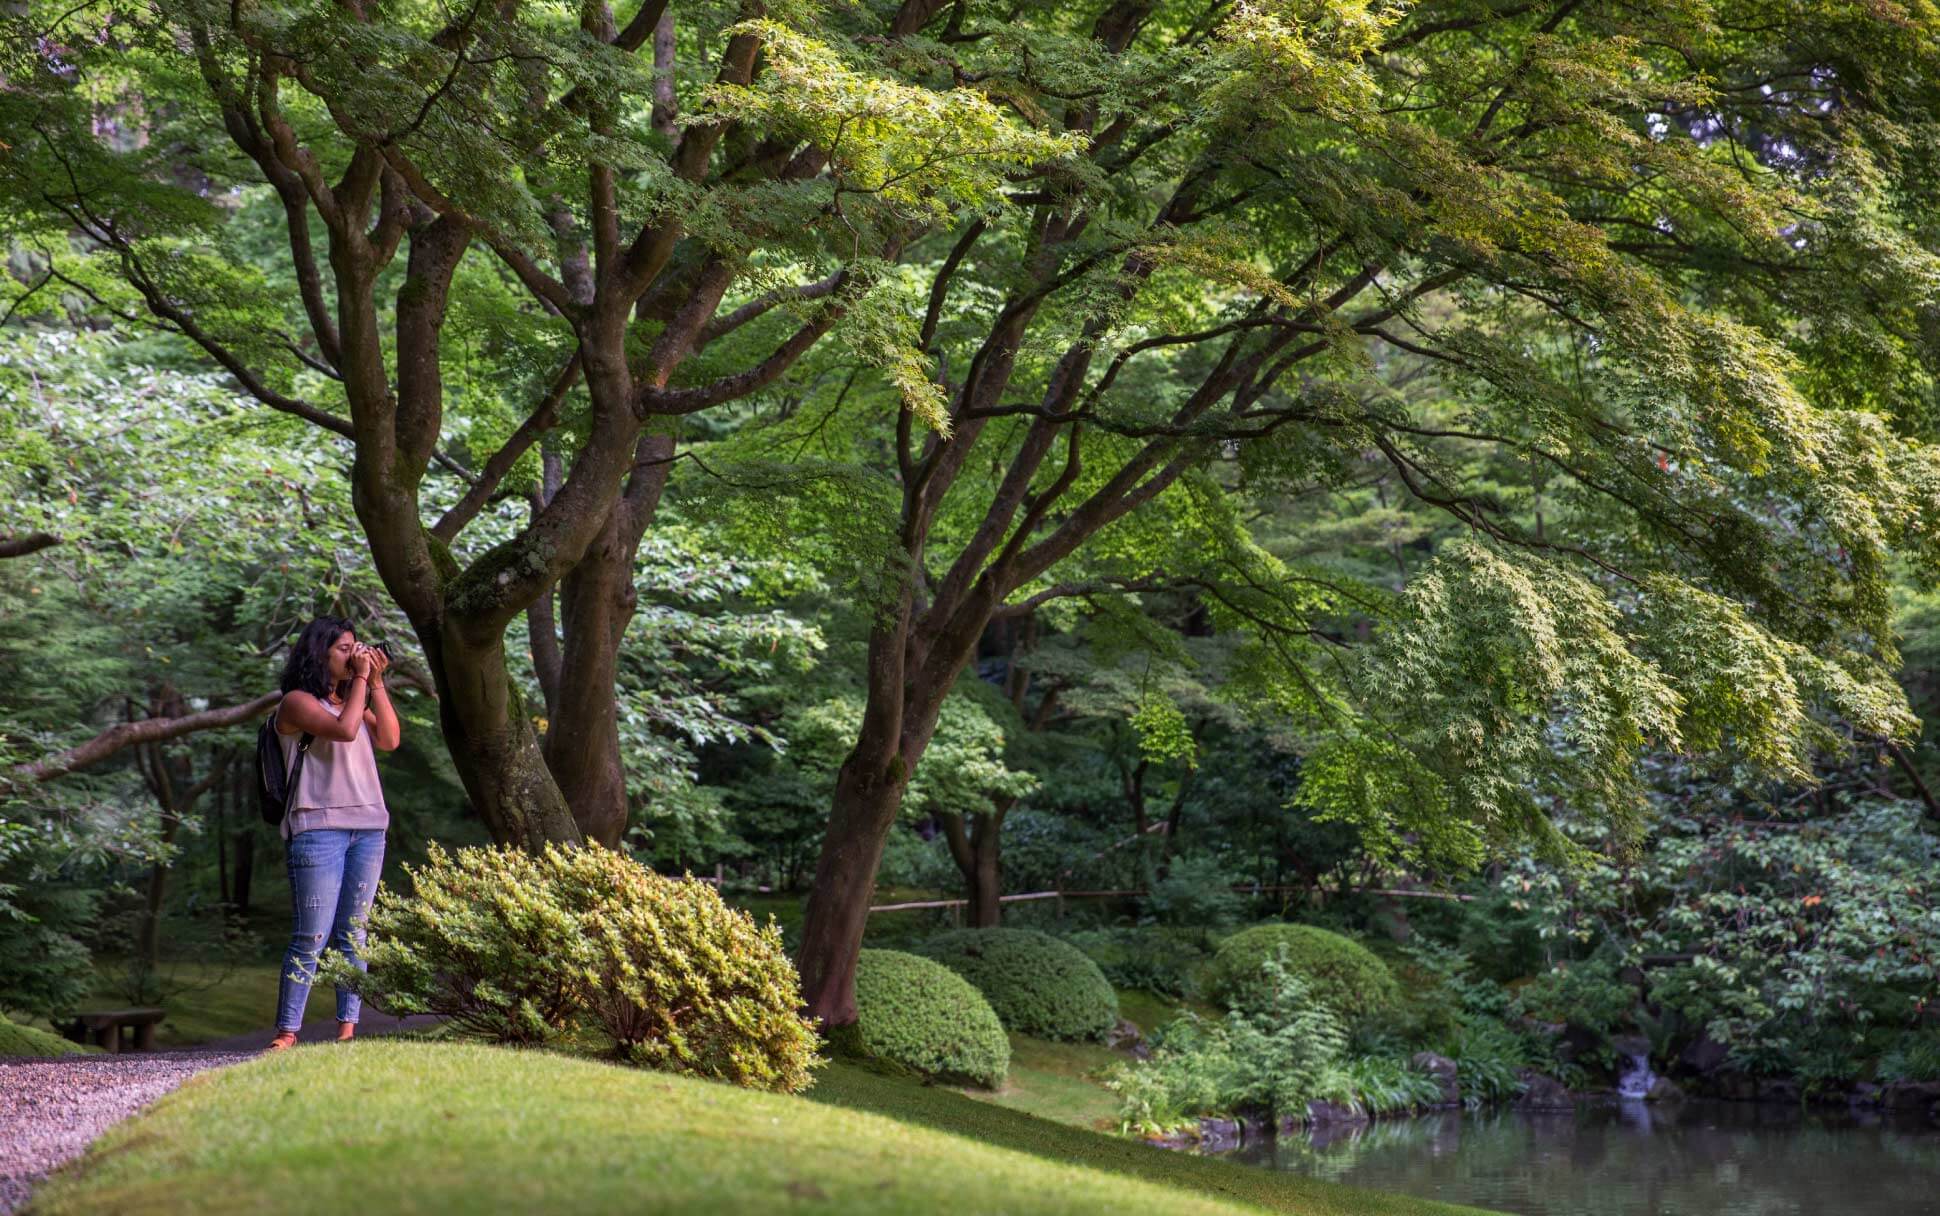 A tourist takes photos in UBC's Nitobe Memorial Garden.